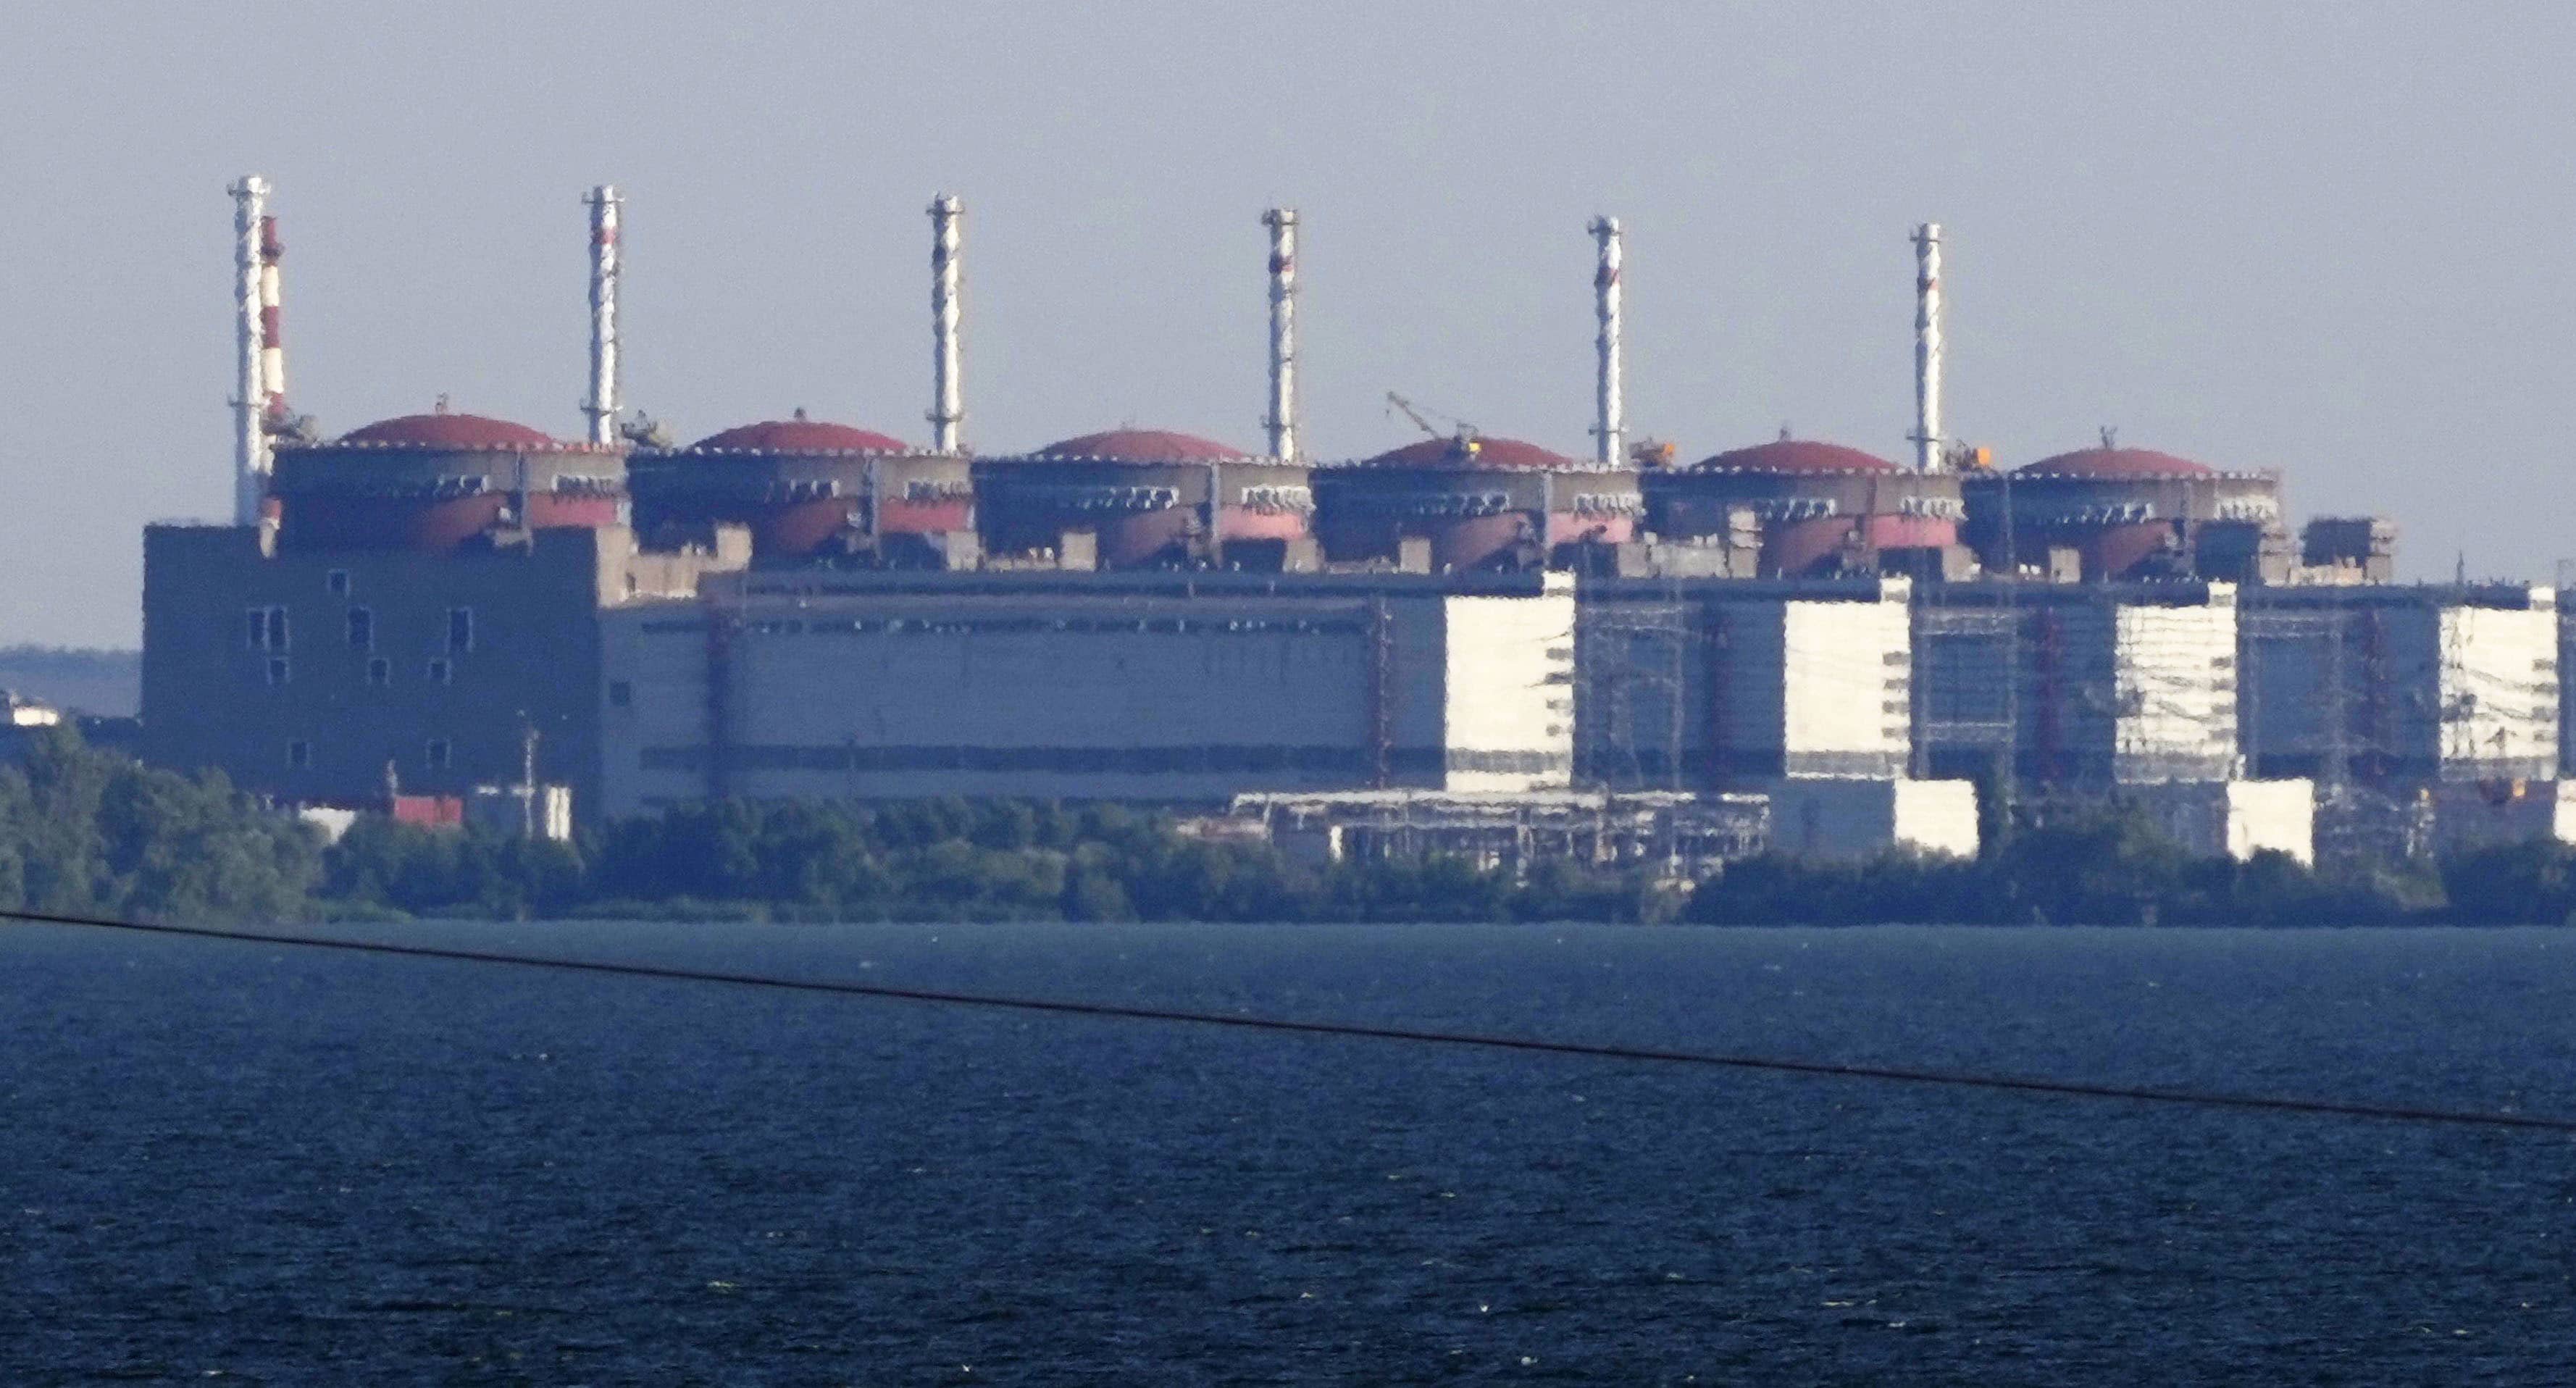 japan-zaporizhzhia-nuclear-power-plant-in-ukraine-3